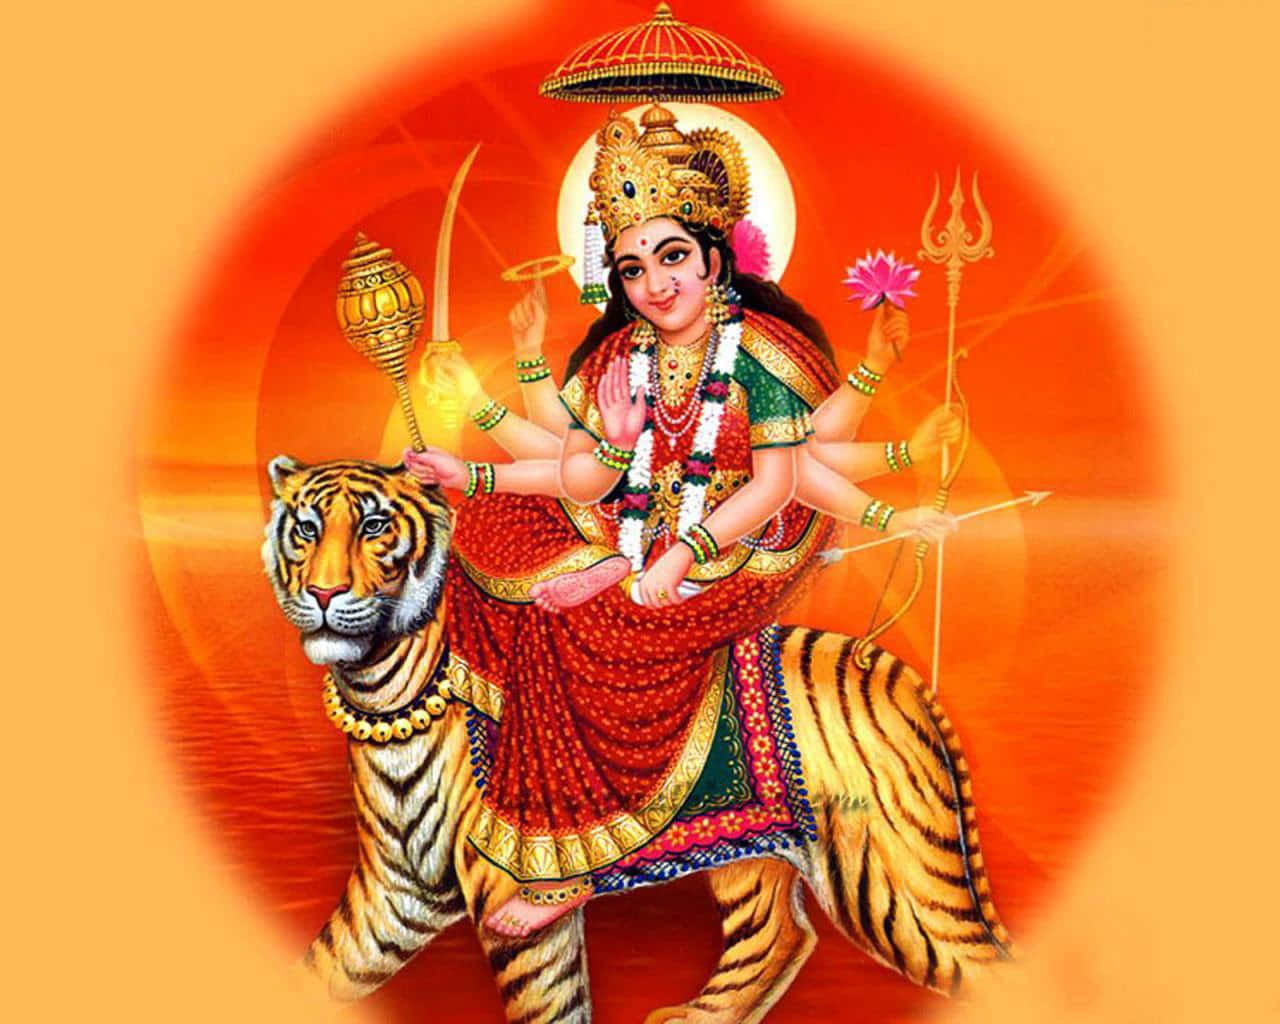 Imagende Durga Maa Durante La Puesta De Sol Naranja